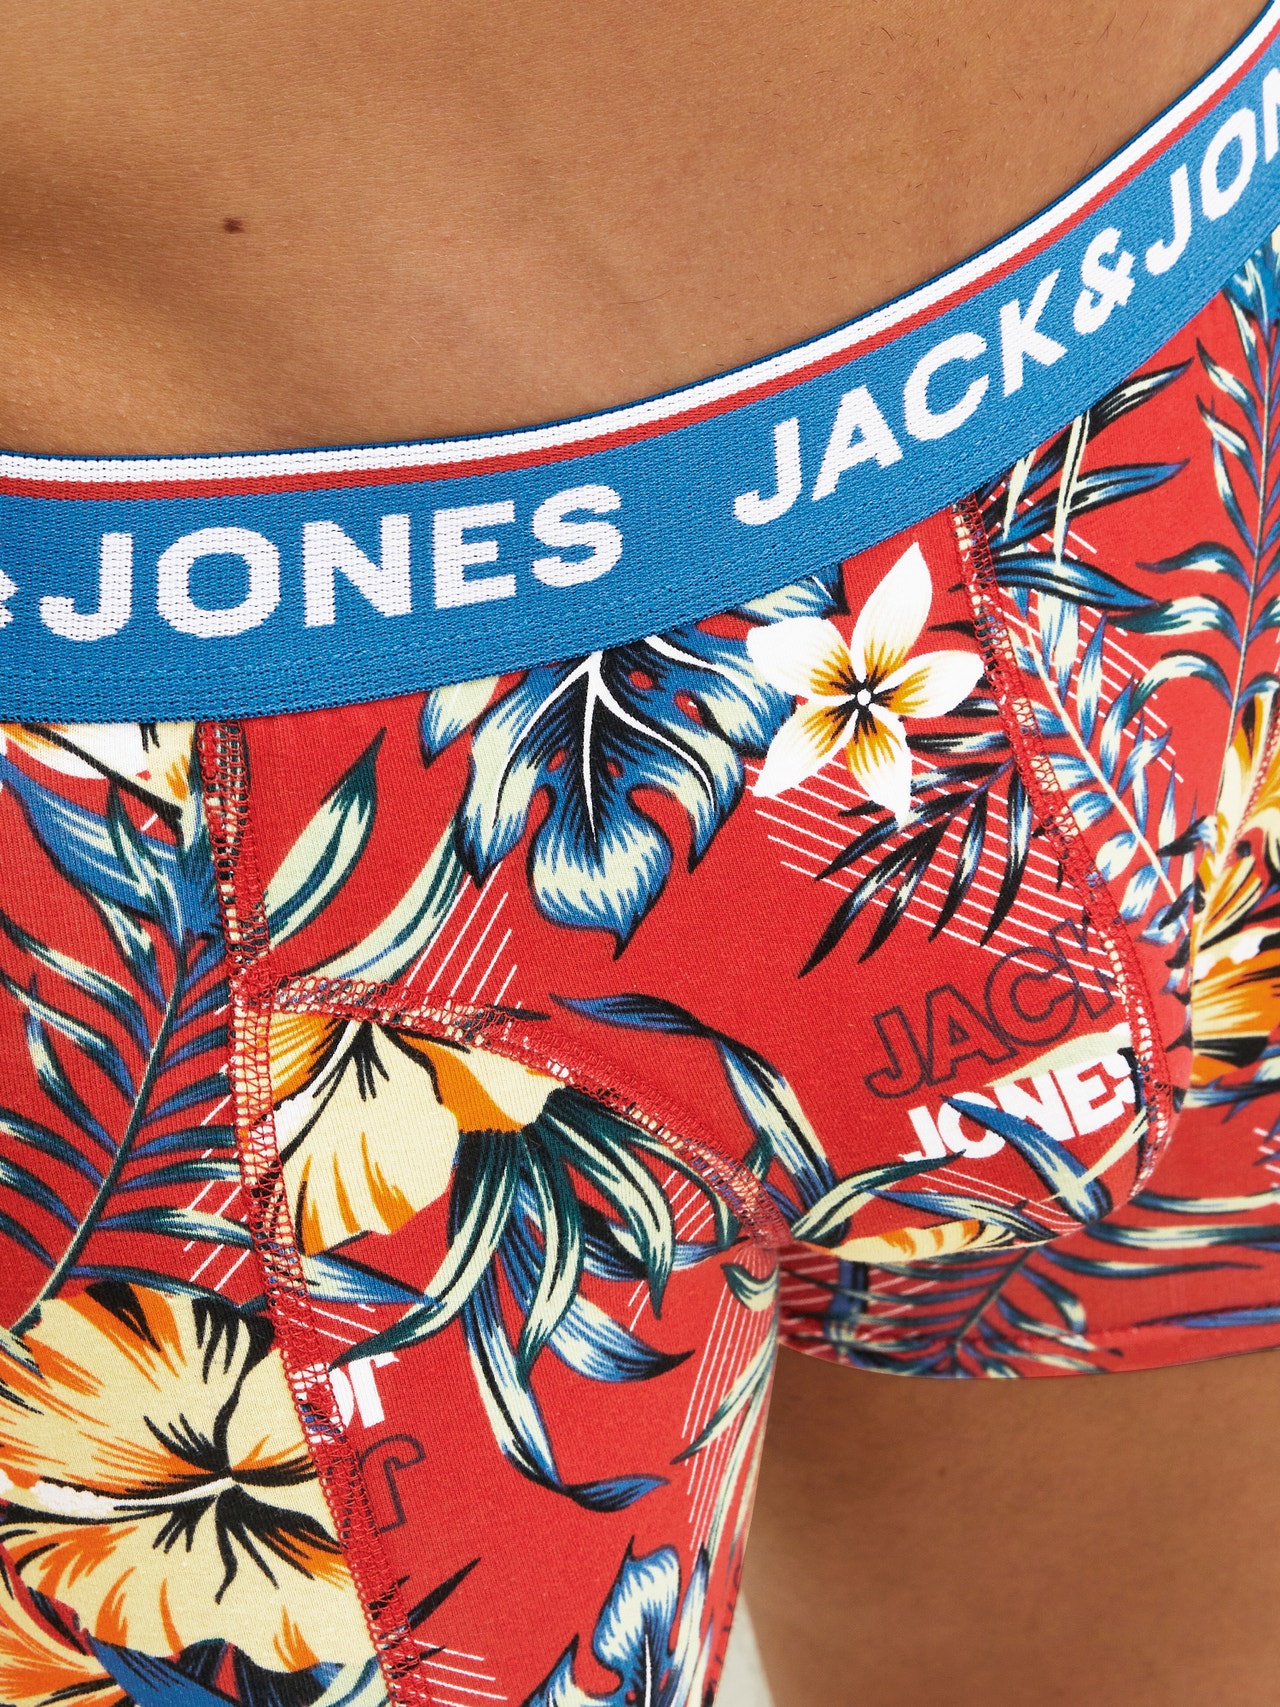 Jack & Jones Pack de 3 Boxers -Black - 12228458